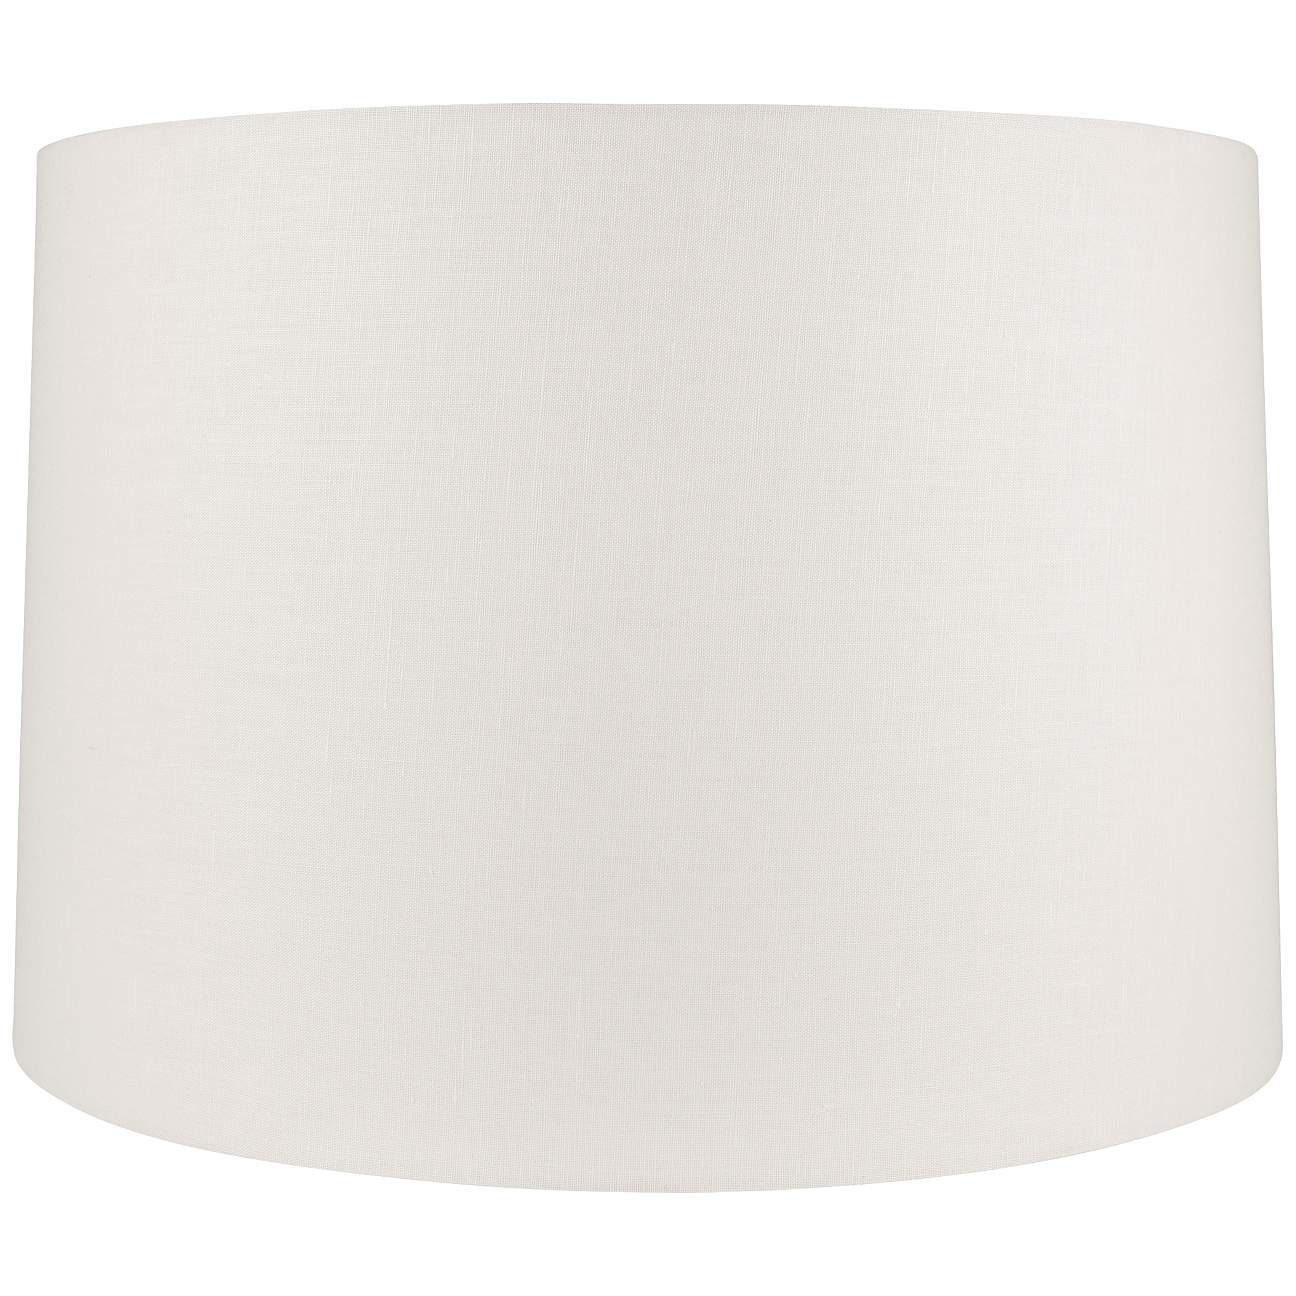 Off-White Linen Round Drum Lamp Shade 11x12x10.5 (Spider) - #56P80 ...